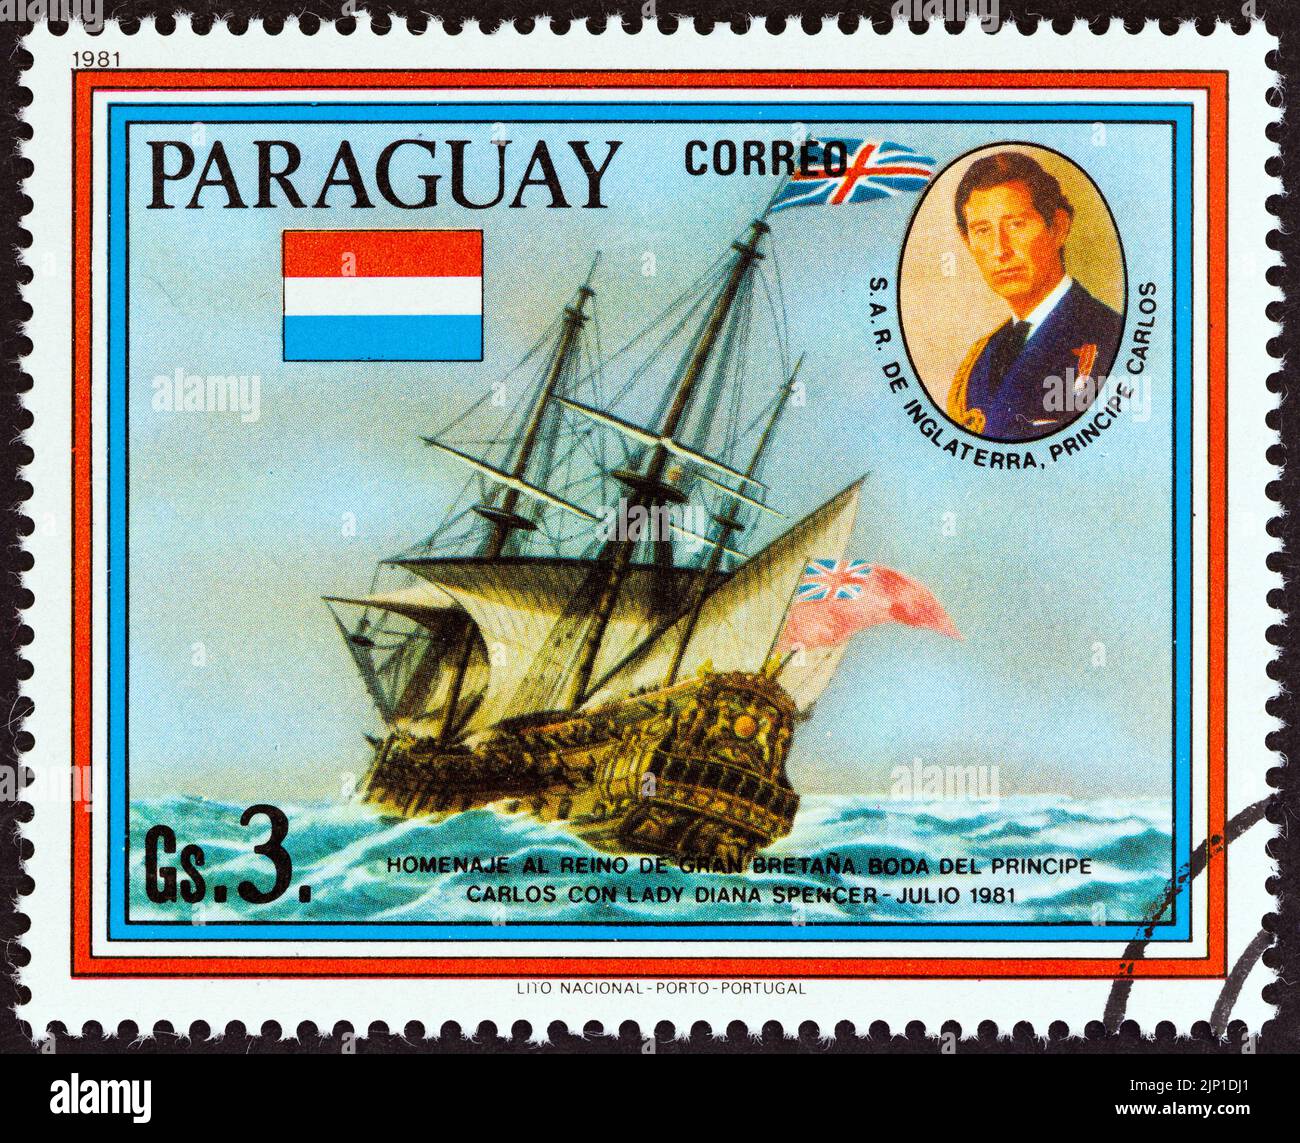 PARAGUAY - VERS 1981: Un timbre imprimé au Paraguay du numéro "mariage du prince Charles et de la dame Diana Spencer" montre la résolution HMS, vers 1981. Banque D'Images